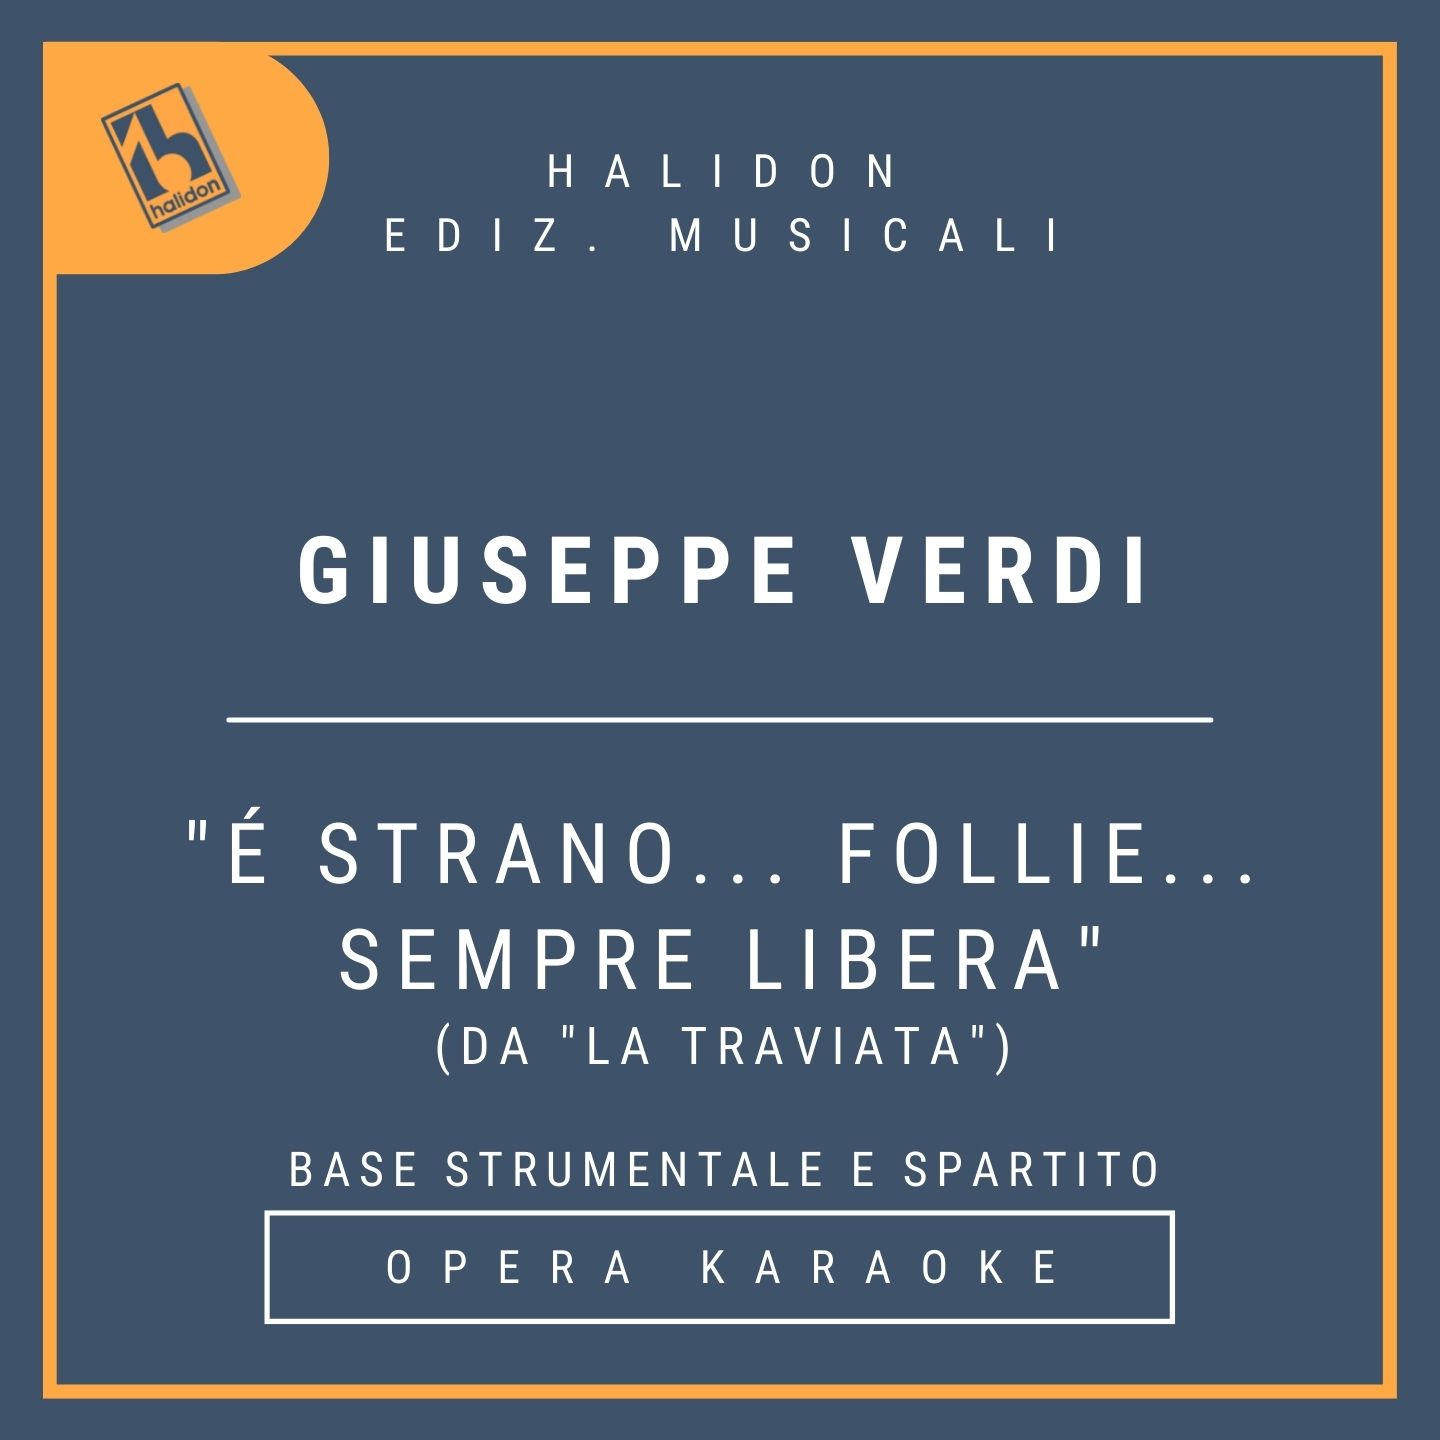 Giuseppe Verdi - E' strano... follie... sempre libera (from 'La Traviata) - Violetta's recitativo and Aria (coloratura soprano) - Instrumental track + sheet